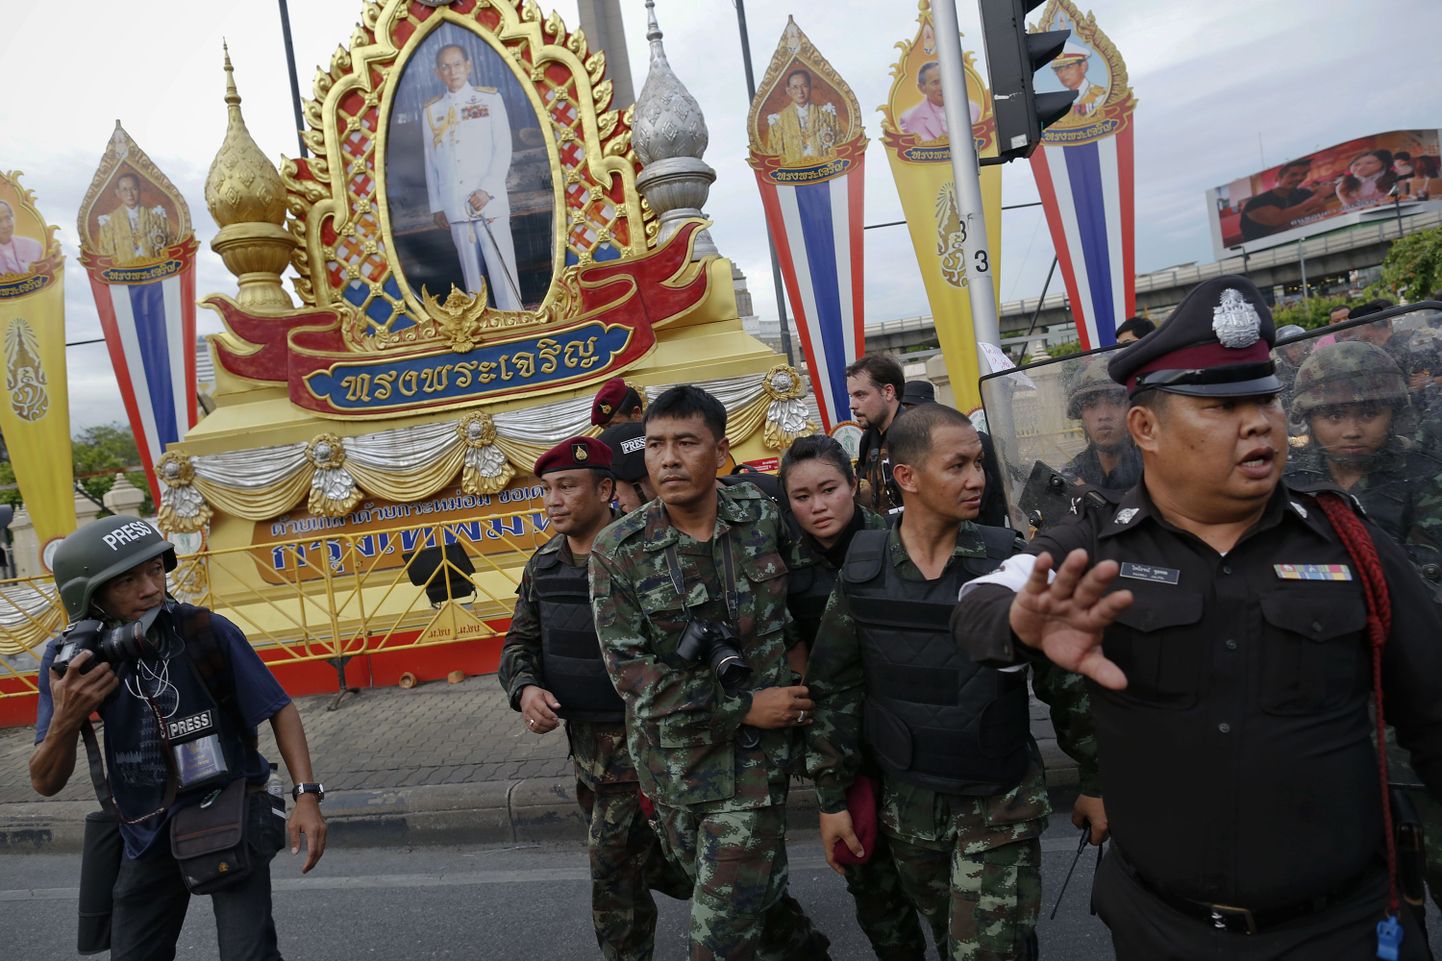 Королевская семья, портреты которой украшают улицы Таиланда, признает роль военных как своеобразного стабилизатора общества.